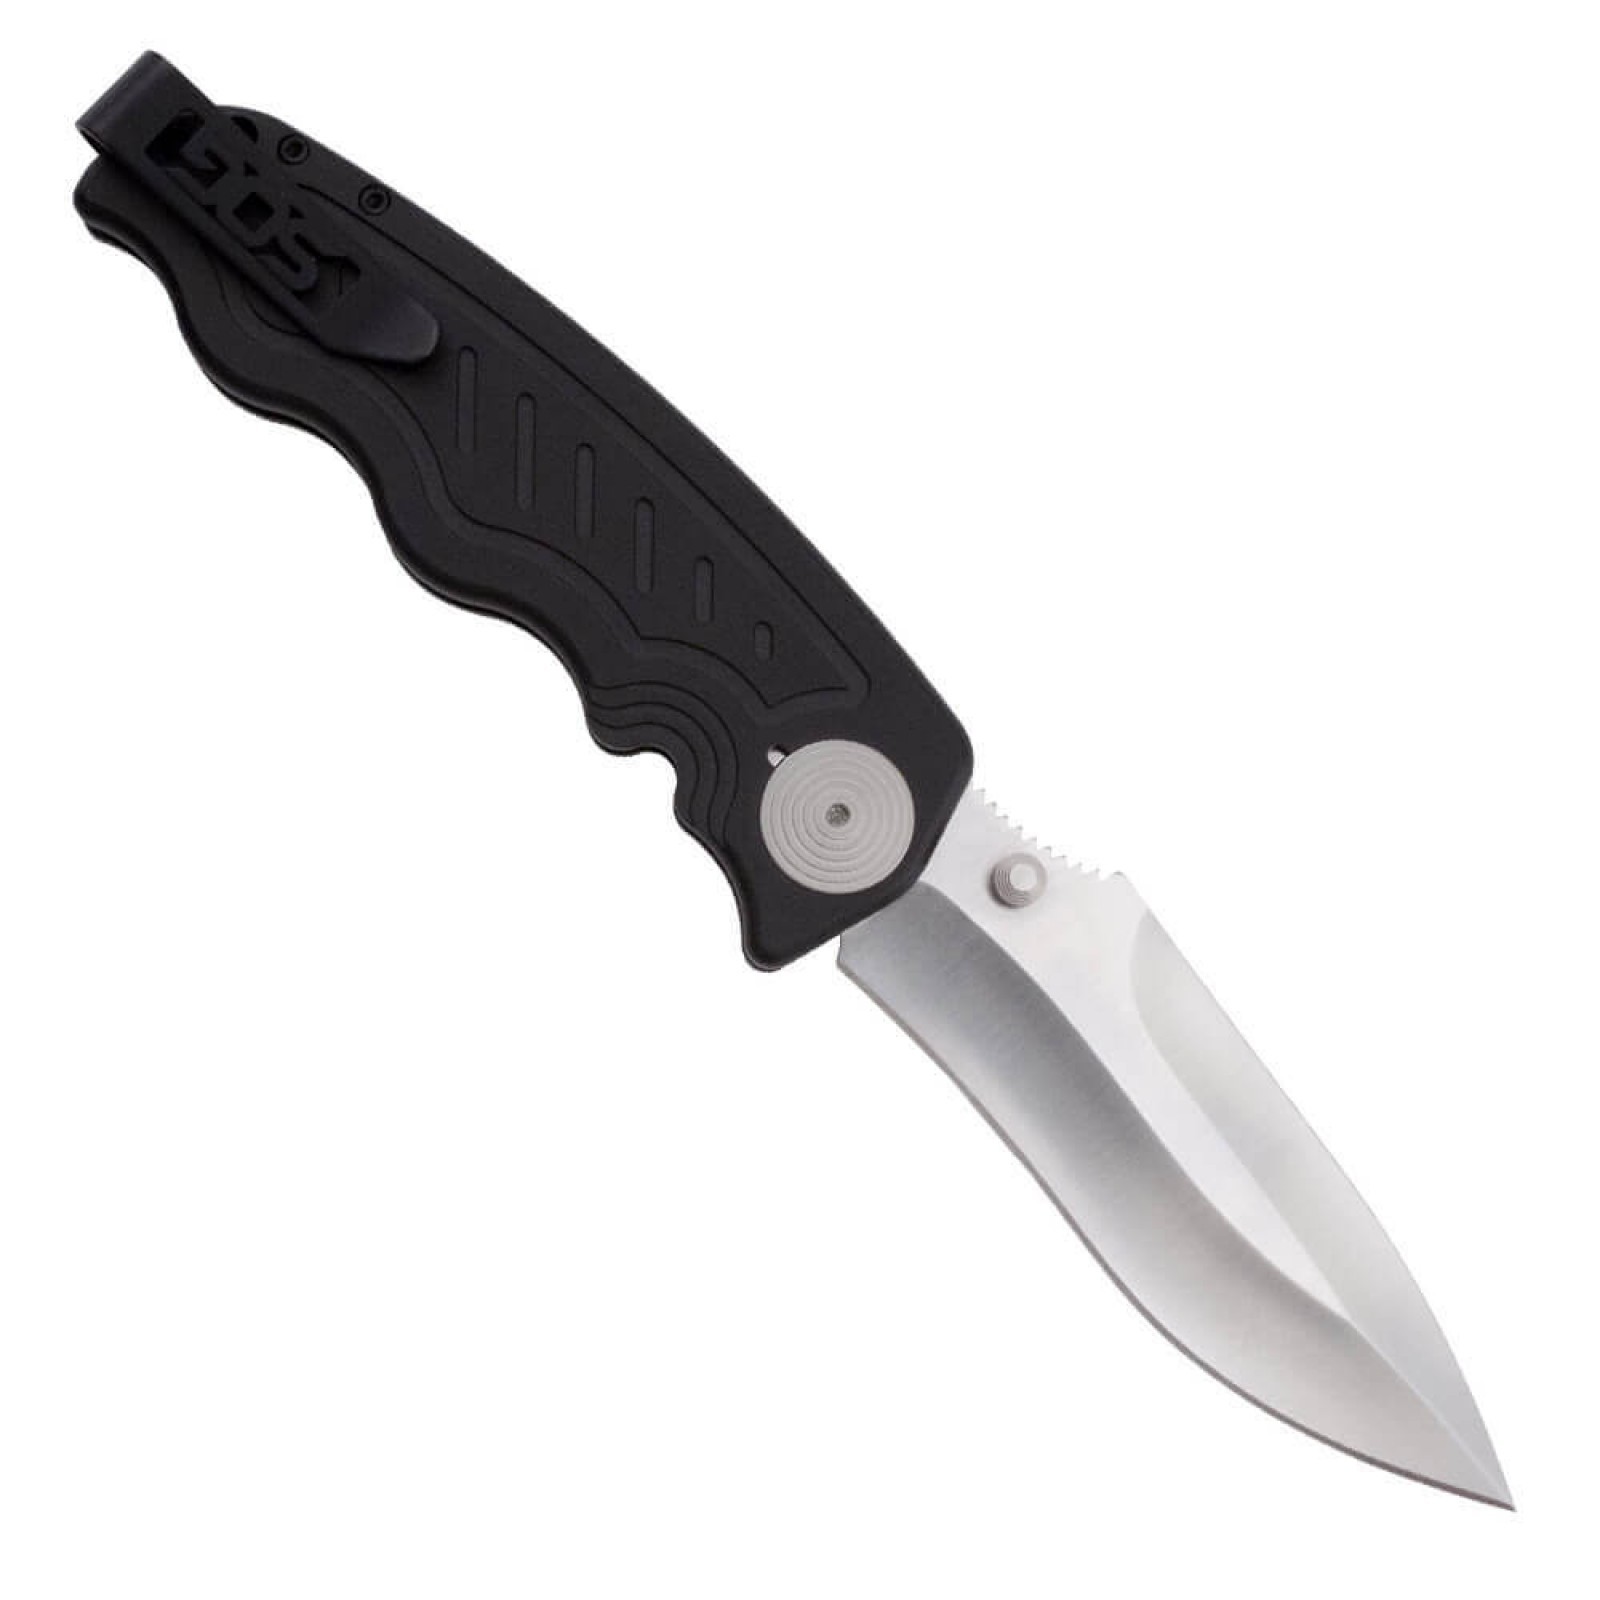 Складной нож Zoom - SOG ZM1011, сталь лезвия AUS-8 Satin Polished, рукоять алюминий, чёрный - фото 3